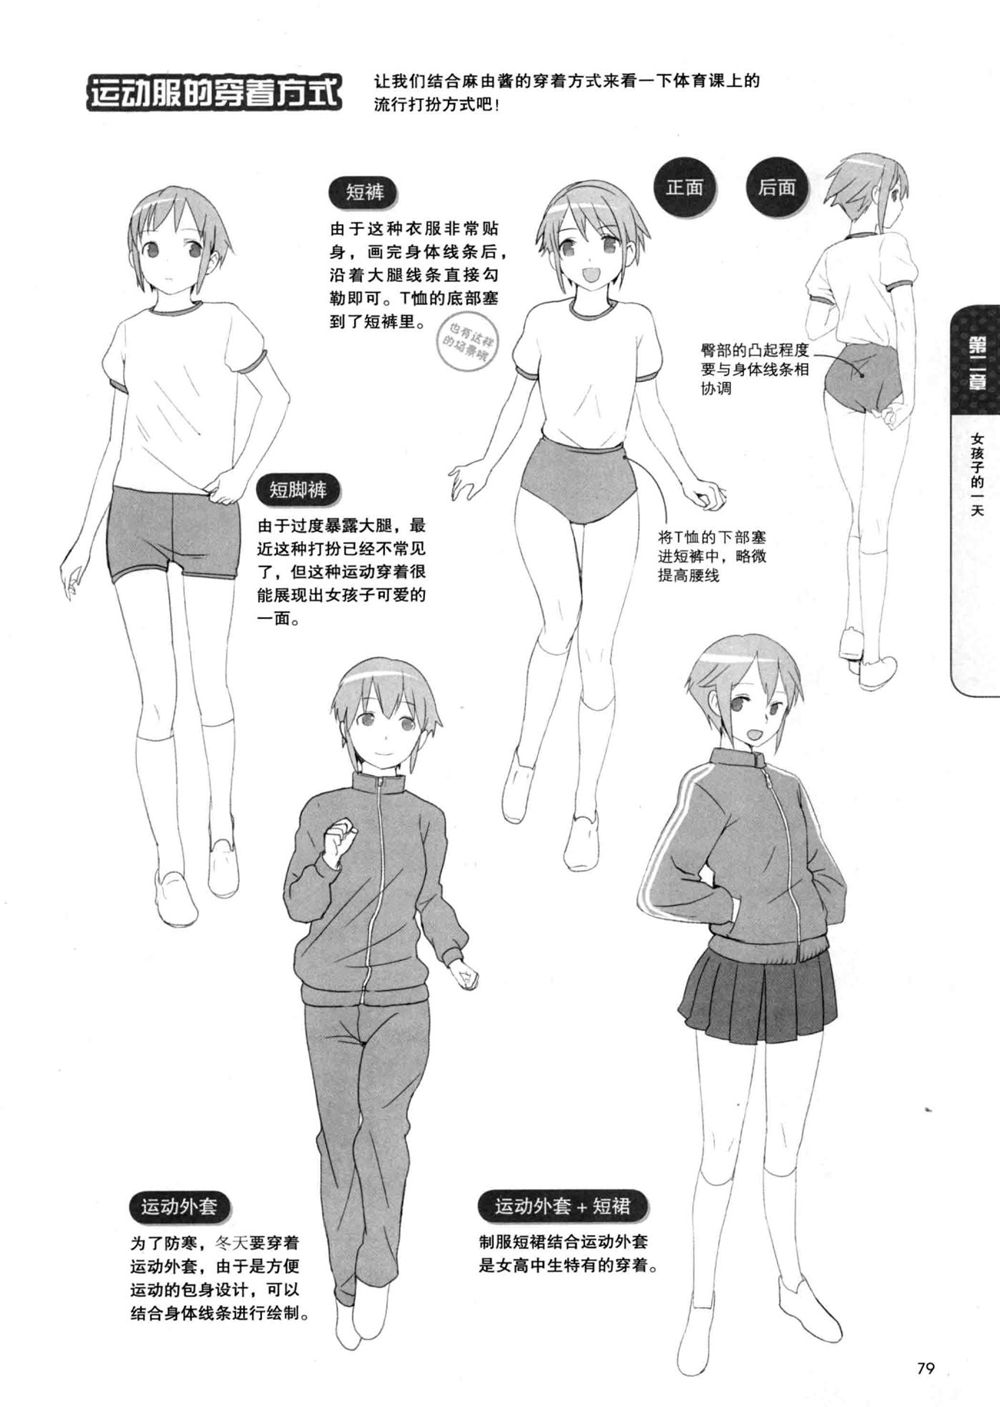 [漫画教程]日本超级漫画课堂 描绘女孩子的日常生活[211P] | 萌绘